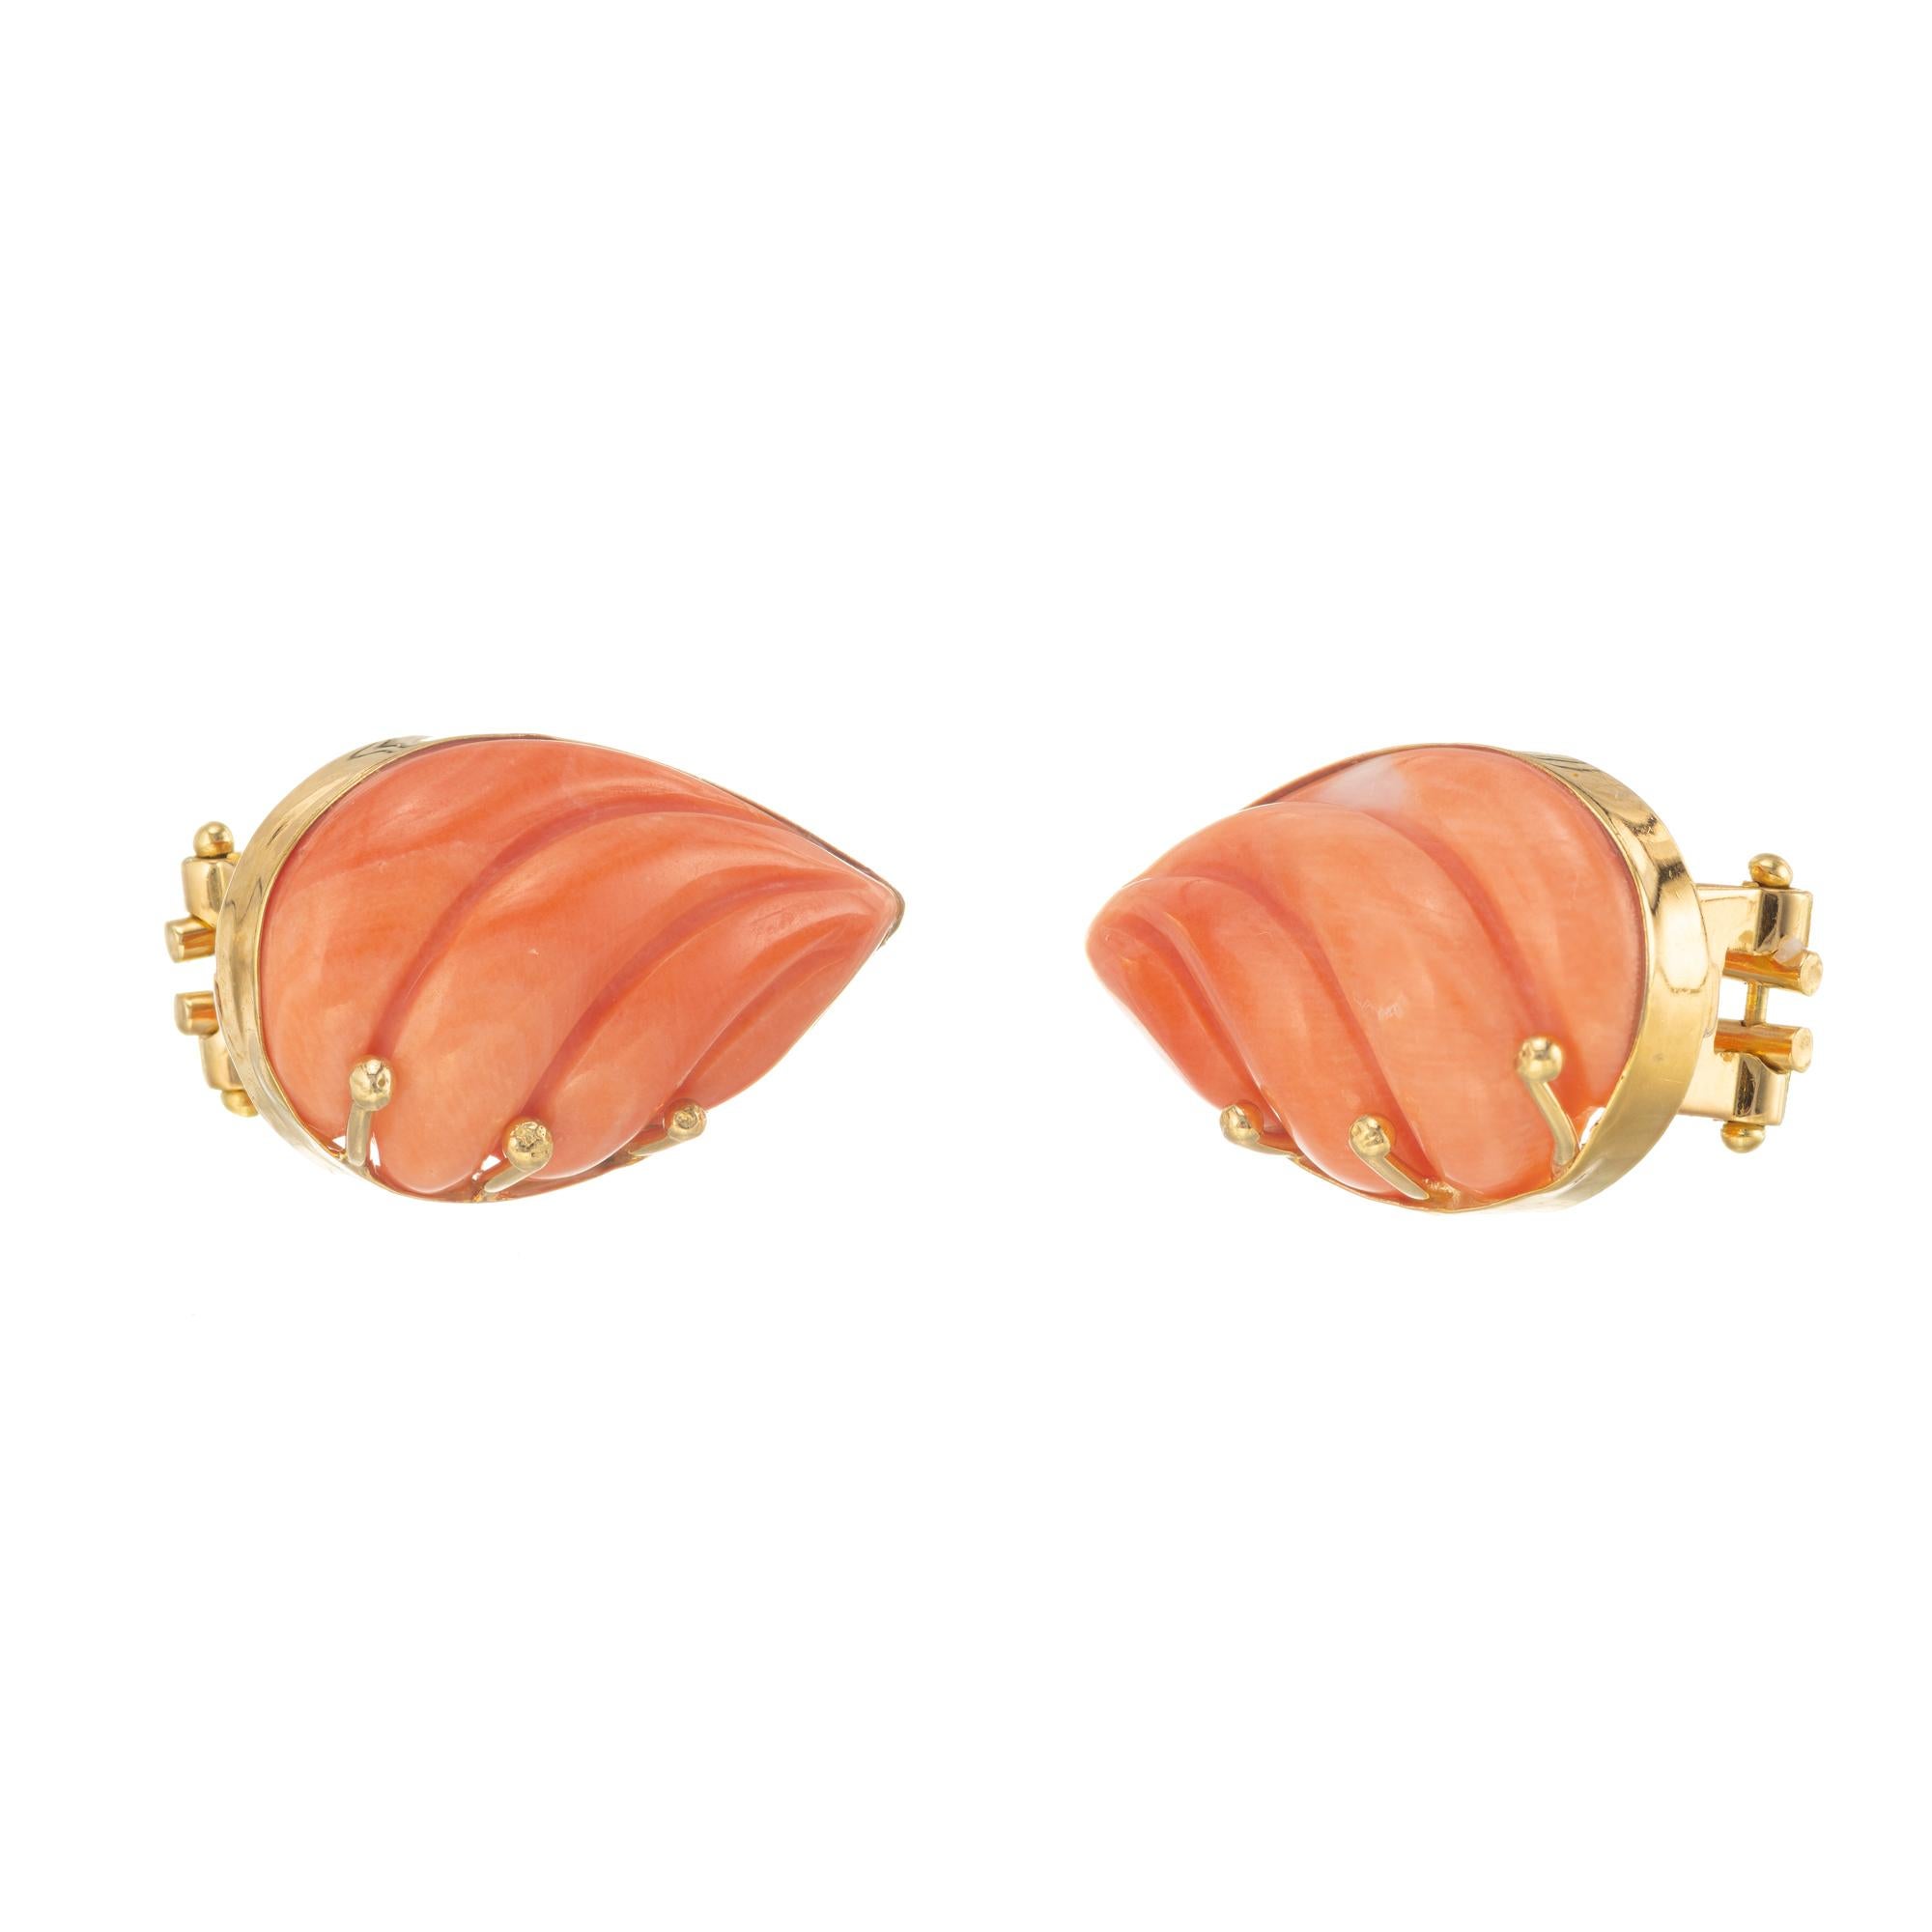 Vintage rosa orange geschnitzt Birne Form Korallen Ohrringe. GIA-zertifizierte natürliche unbehandelte Croal Clip Post-Ohrringe

2 geschnitzte rosa-orange birnenförmige Koralle GIA Zertifikat # 5202120585
18k Gelbgold 
Gestempelt: 750
9.0 Gramm
Von